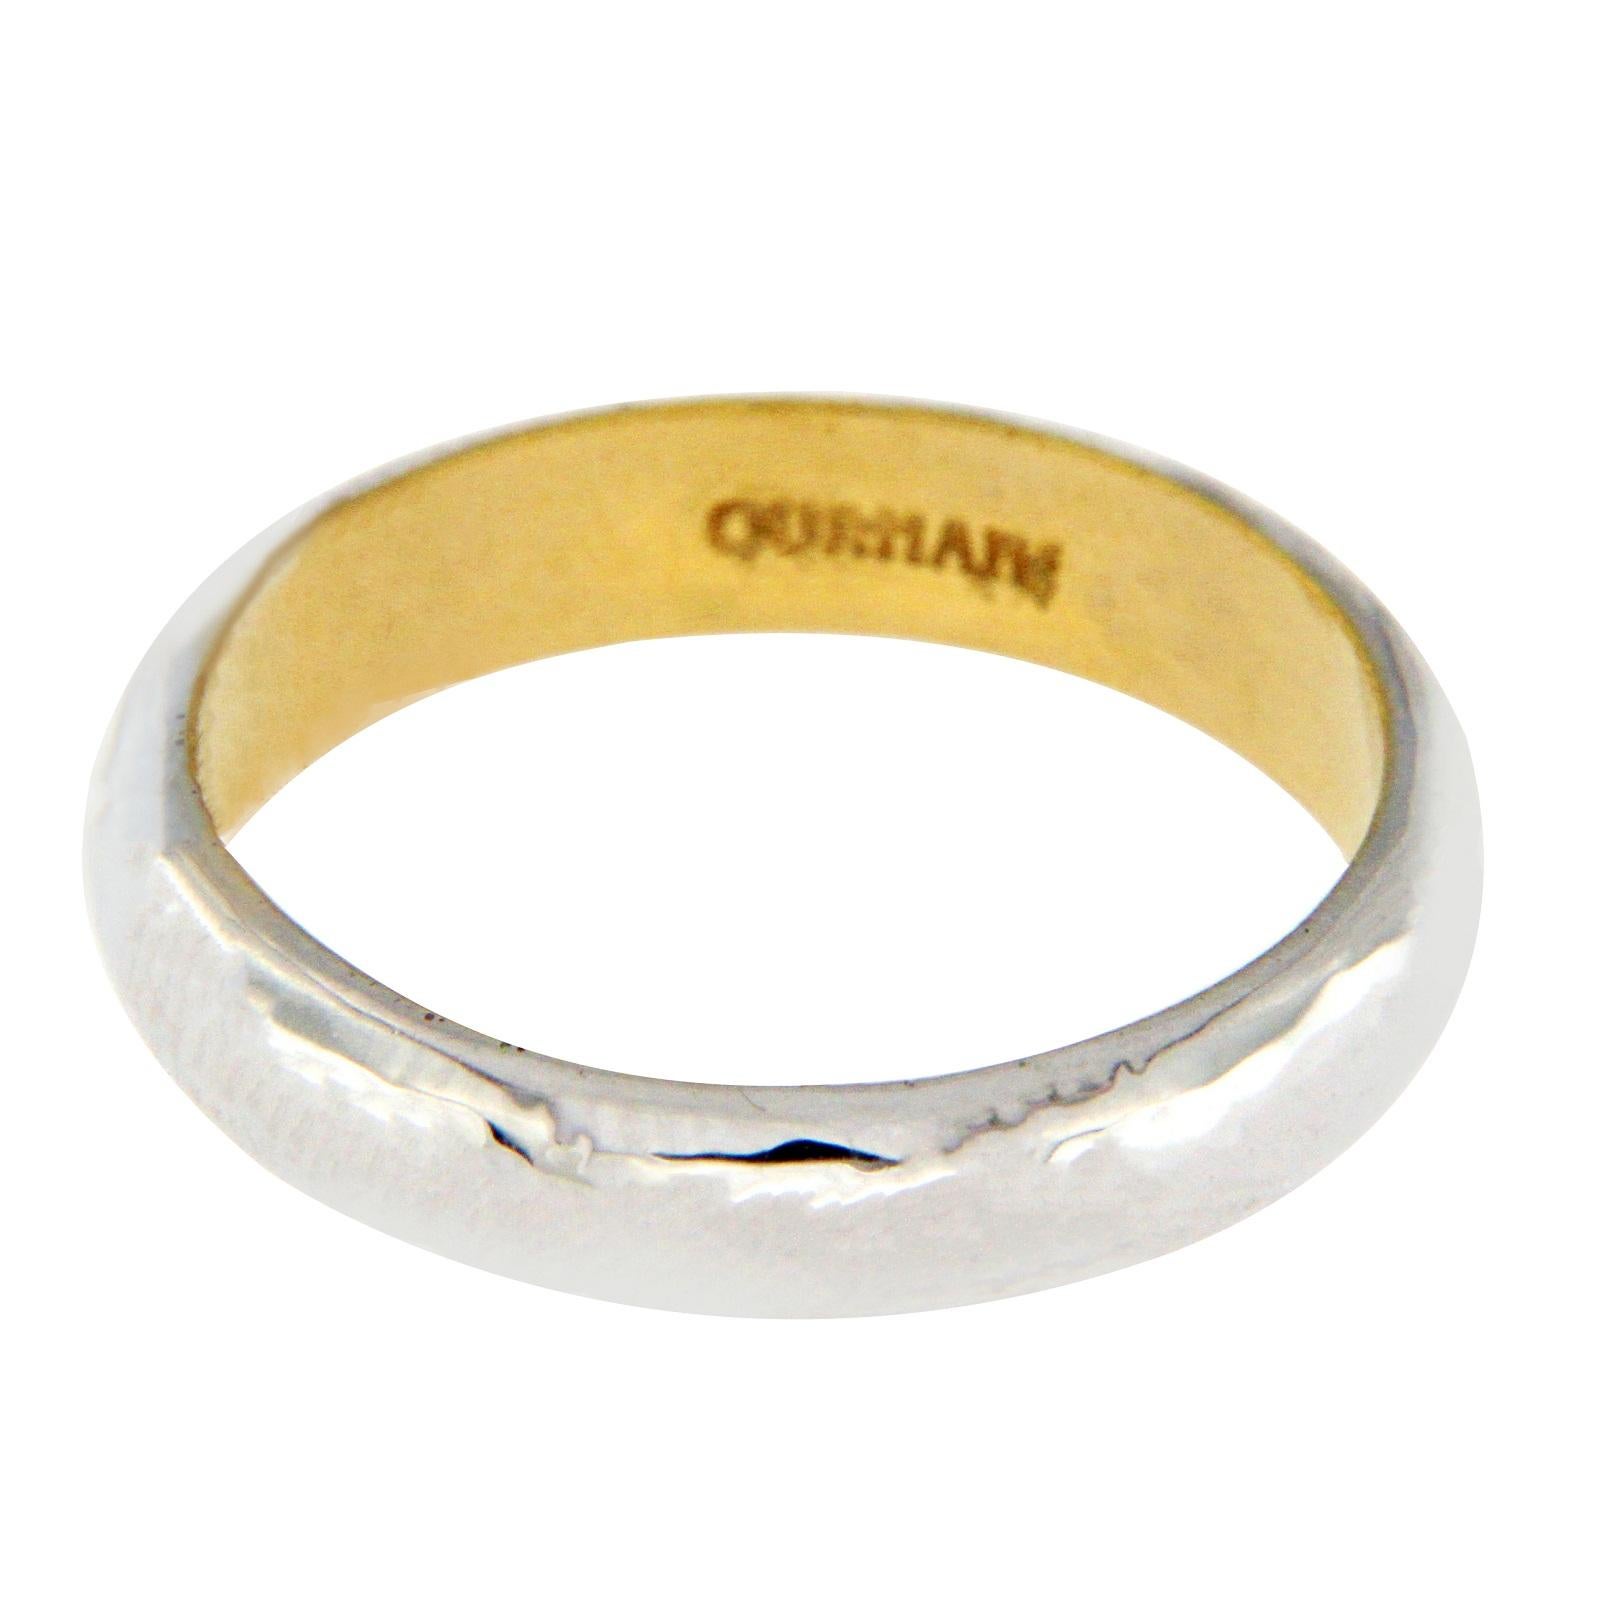 Gurhan 18 Karat White Gold and 24 Karat Yellow Gold Galahad Band Ring